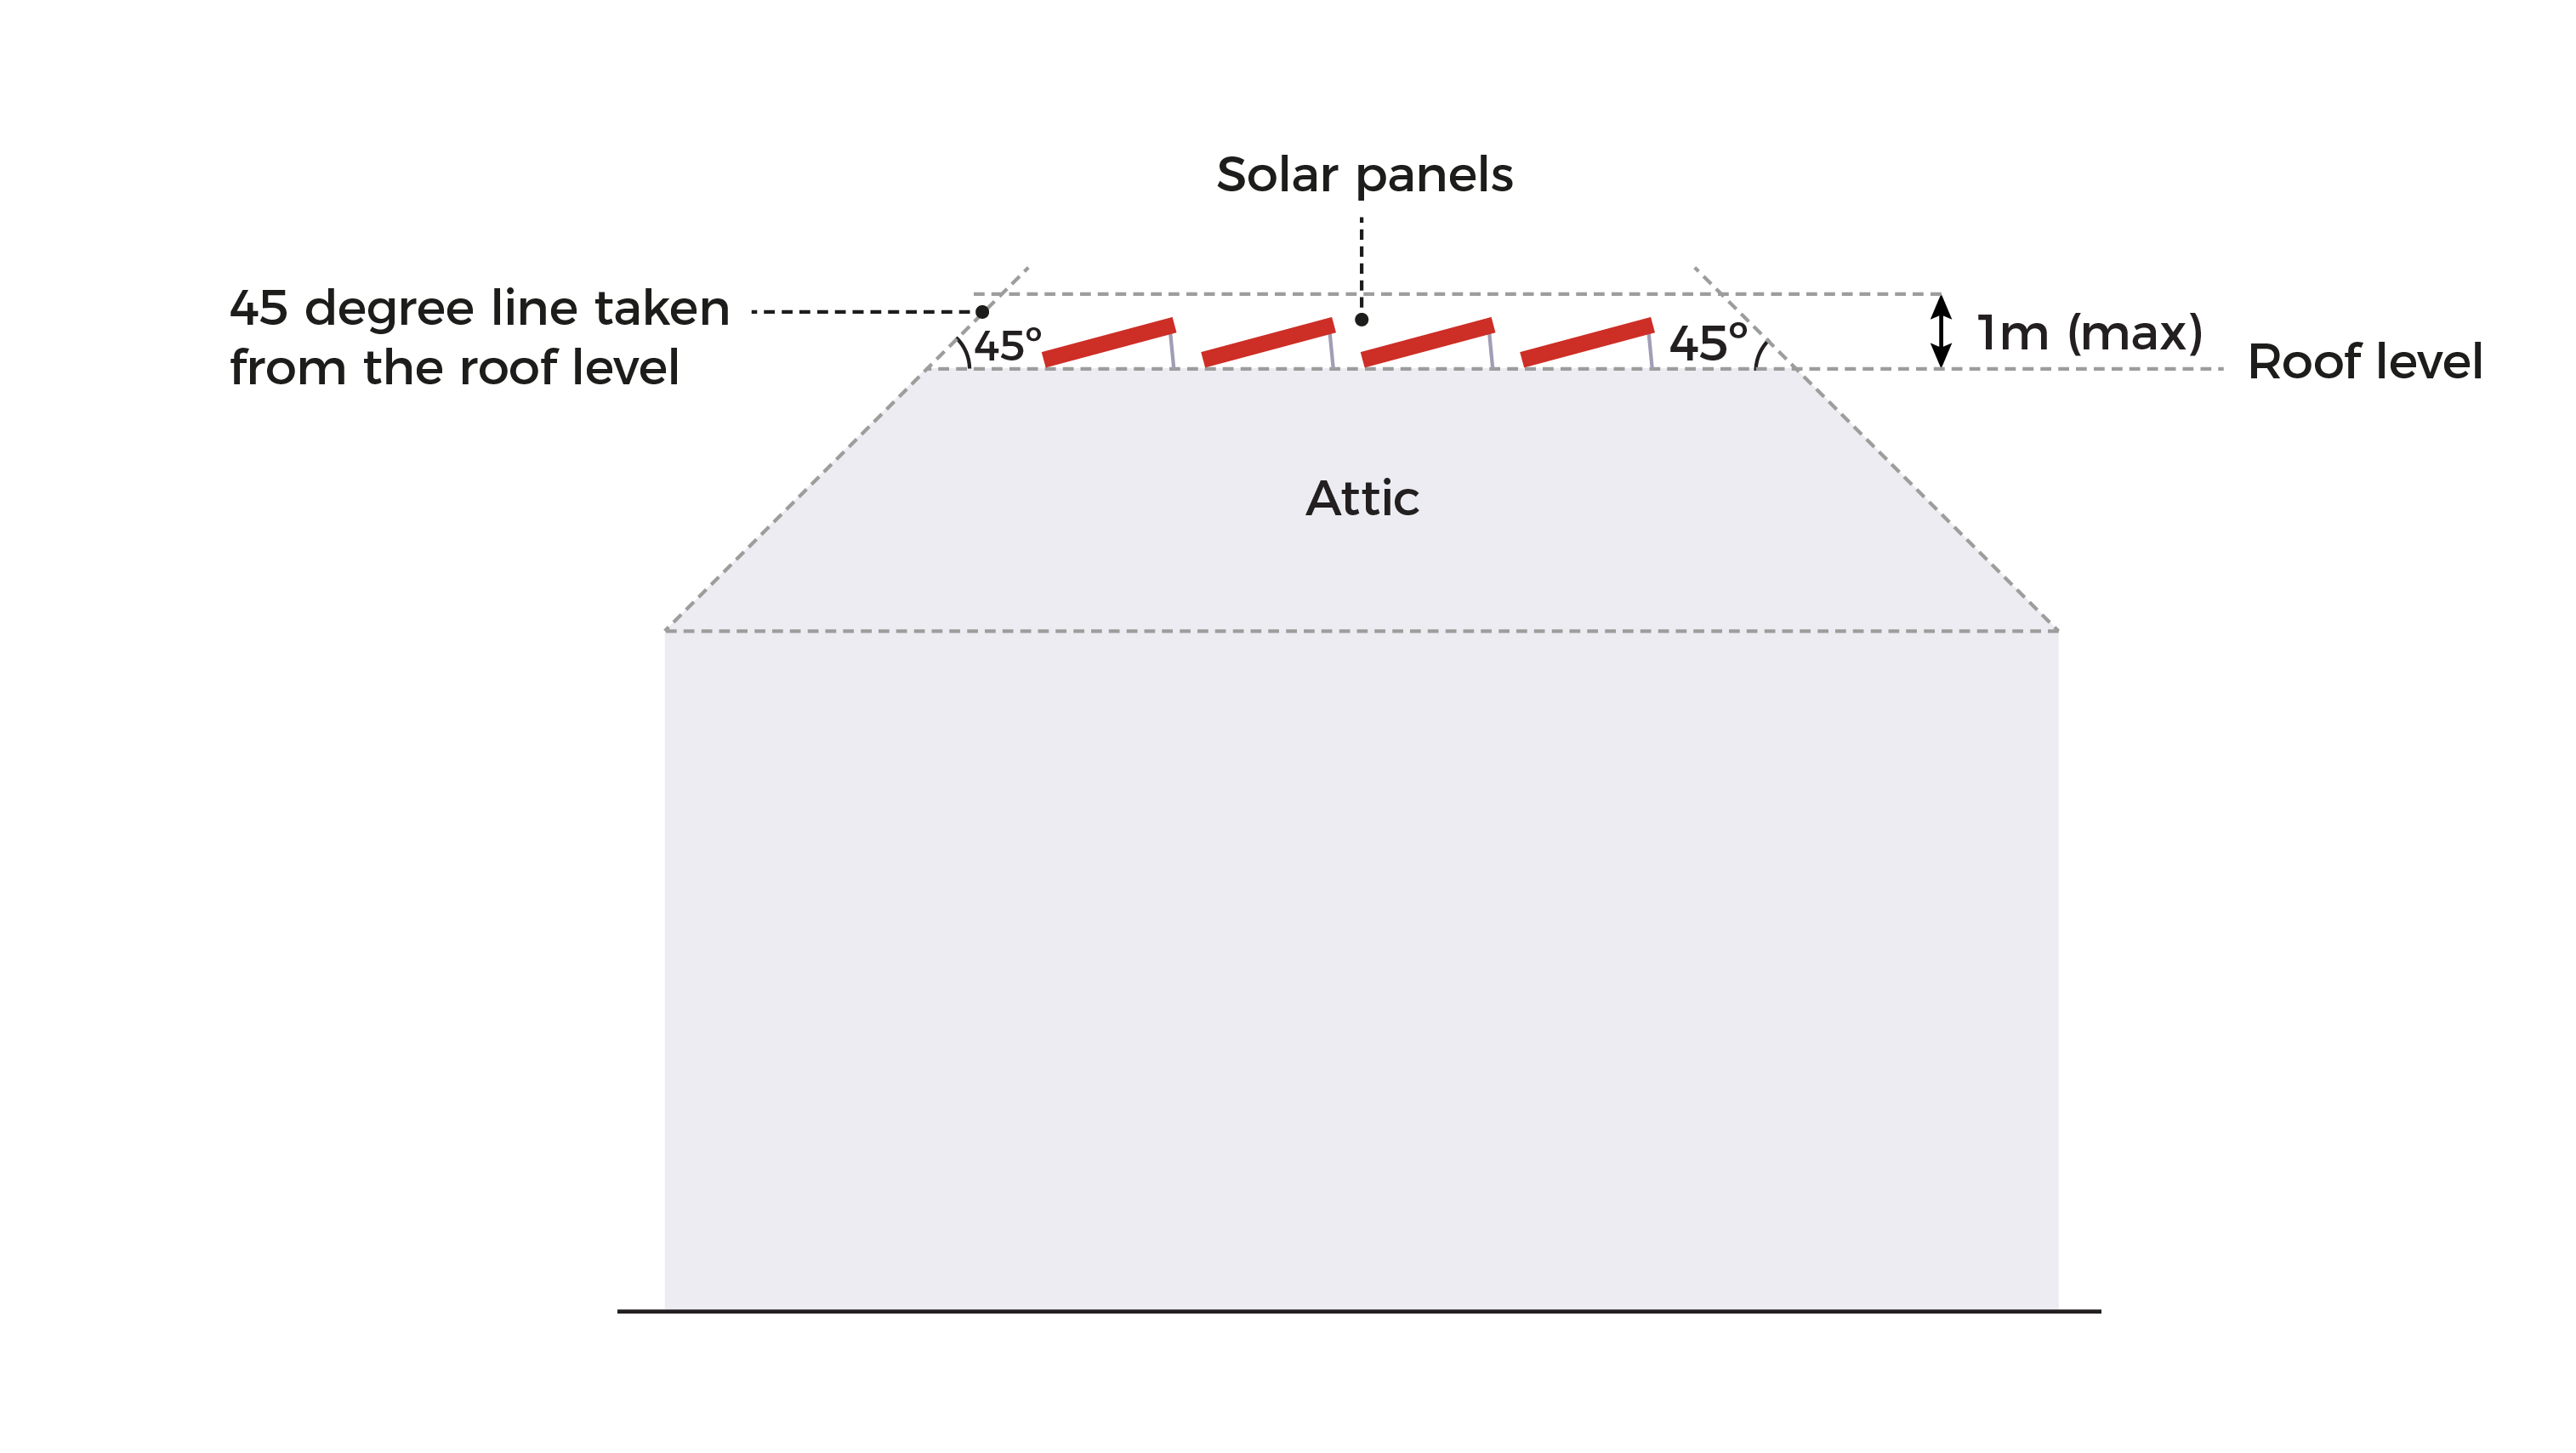 Solar panels for landed housing developments